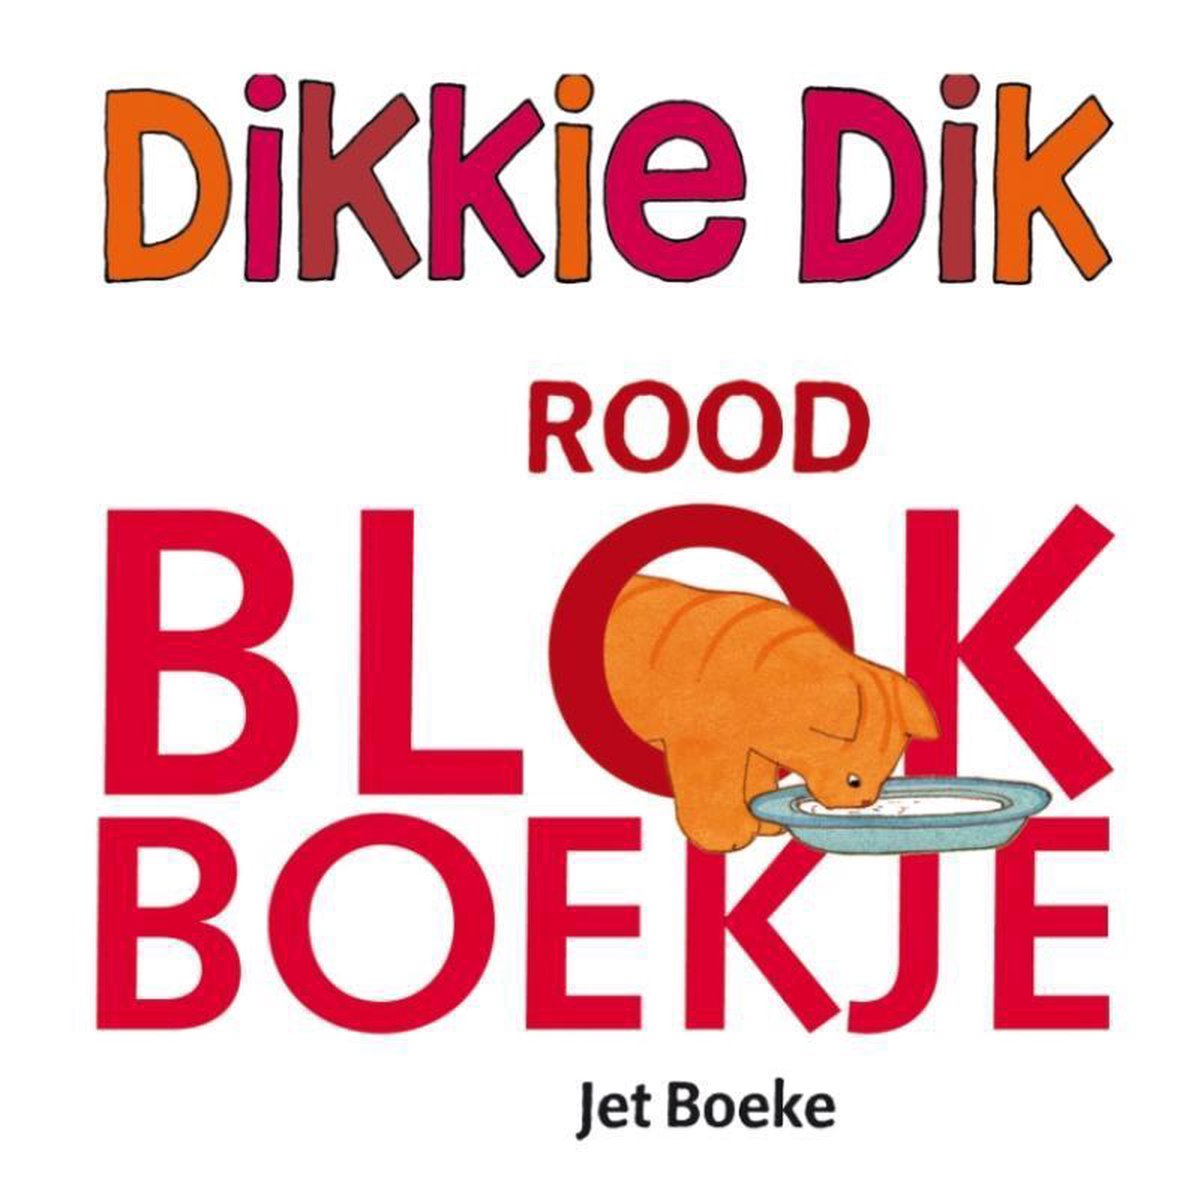 Dikkie Dik - Rood blokboekje